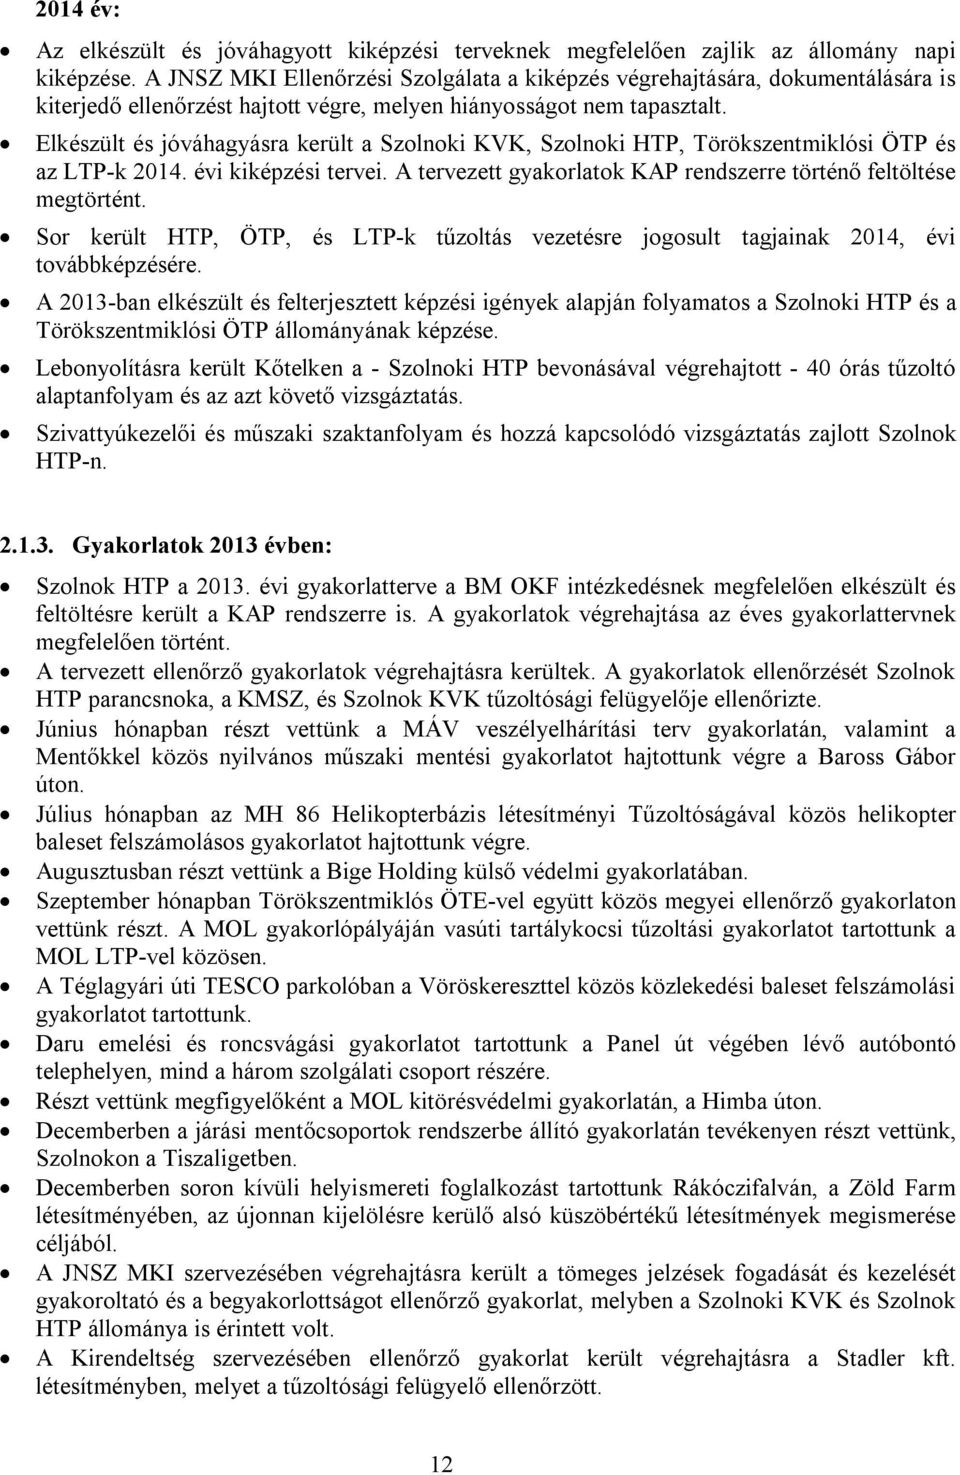 Elkészült és jóváhagyásra került a Szolnoki KVK, Szolnoki HTP, Törökszentmiklósi ÖTP és az LTP-k 2014. évi kiképzési tervei. A tervezett gyakorlatok KAP rendszerre történő feltöltése megtörtént.